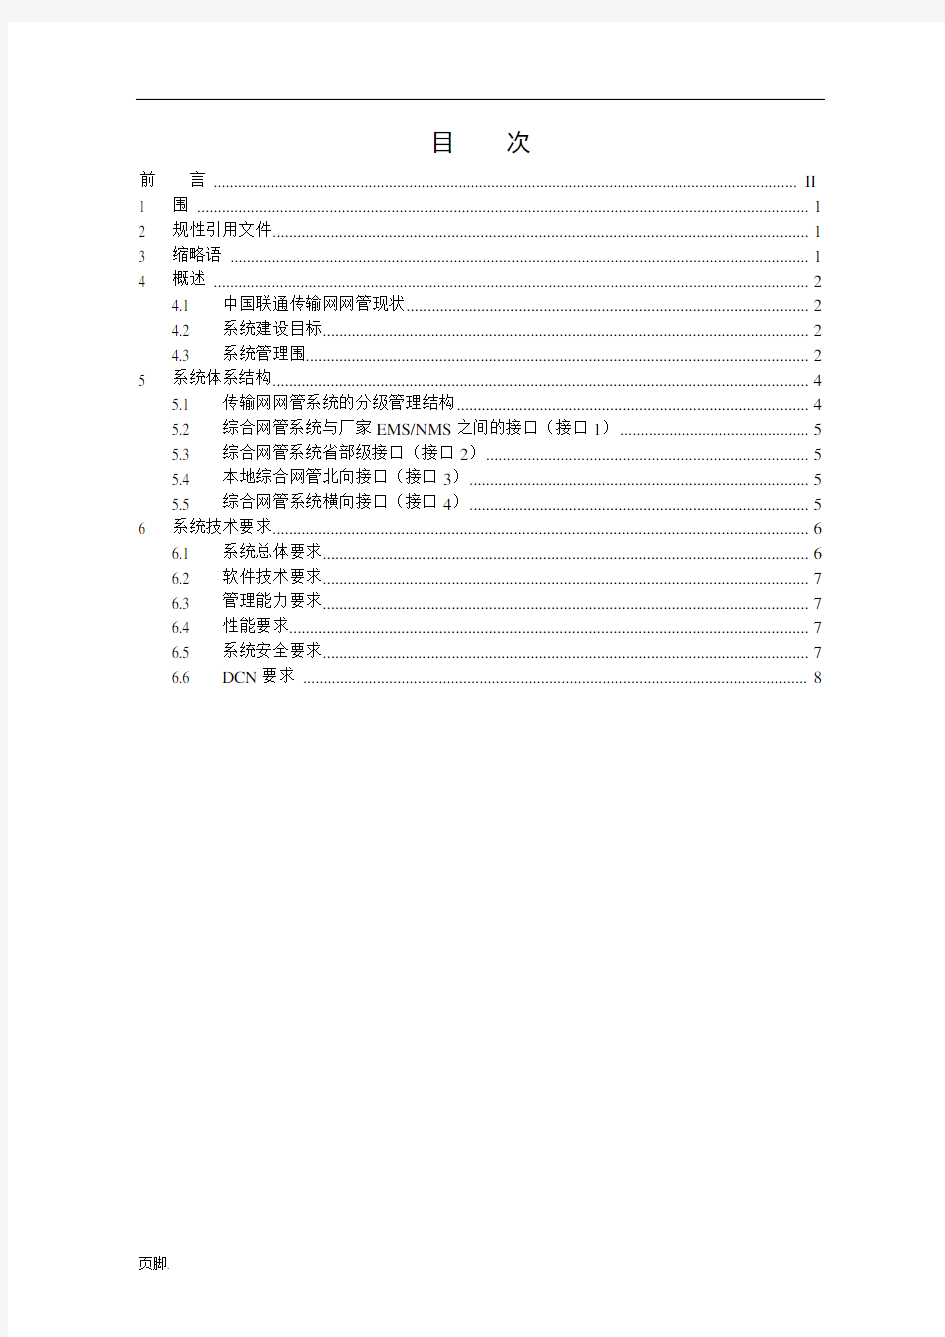 中国联通传输网综合网络管理系统技术规范总册